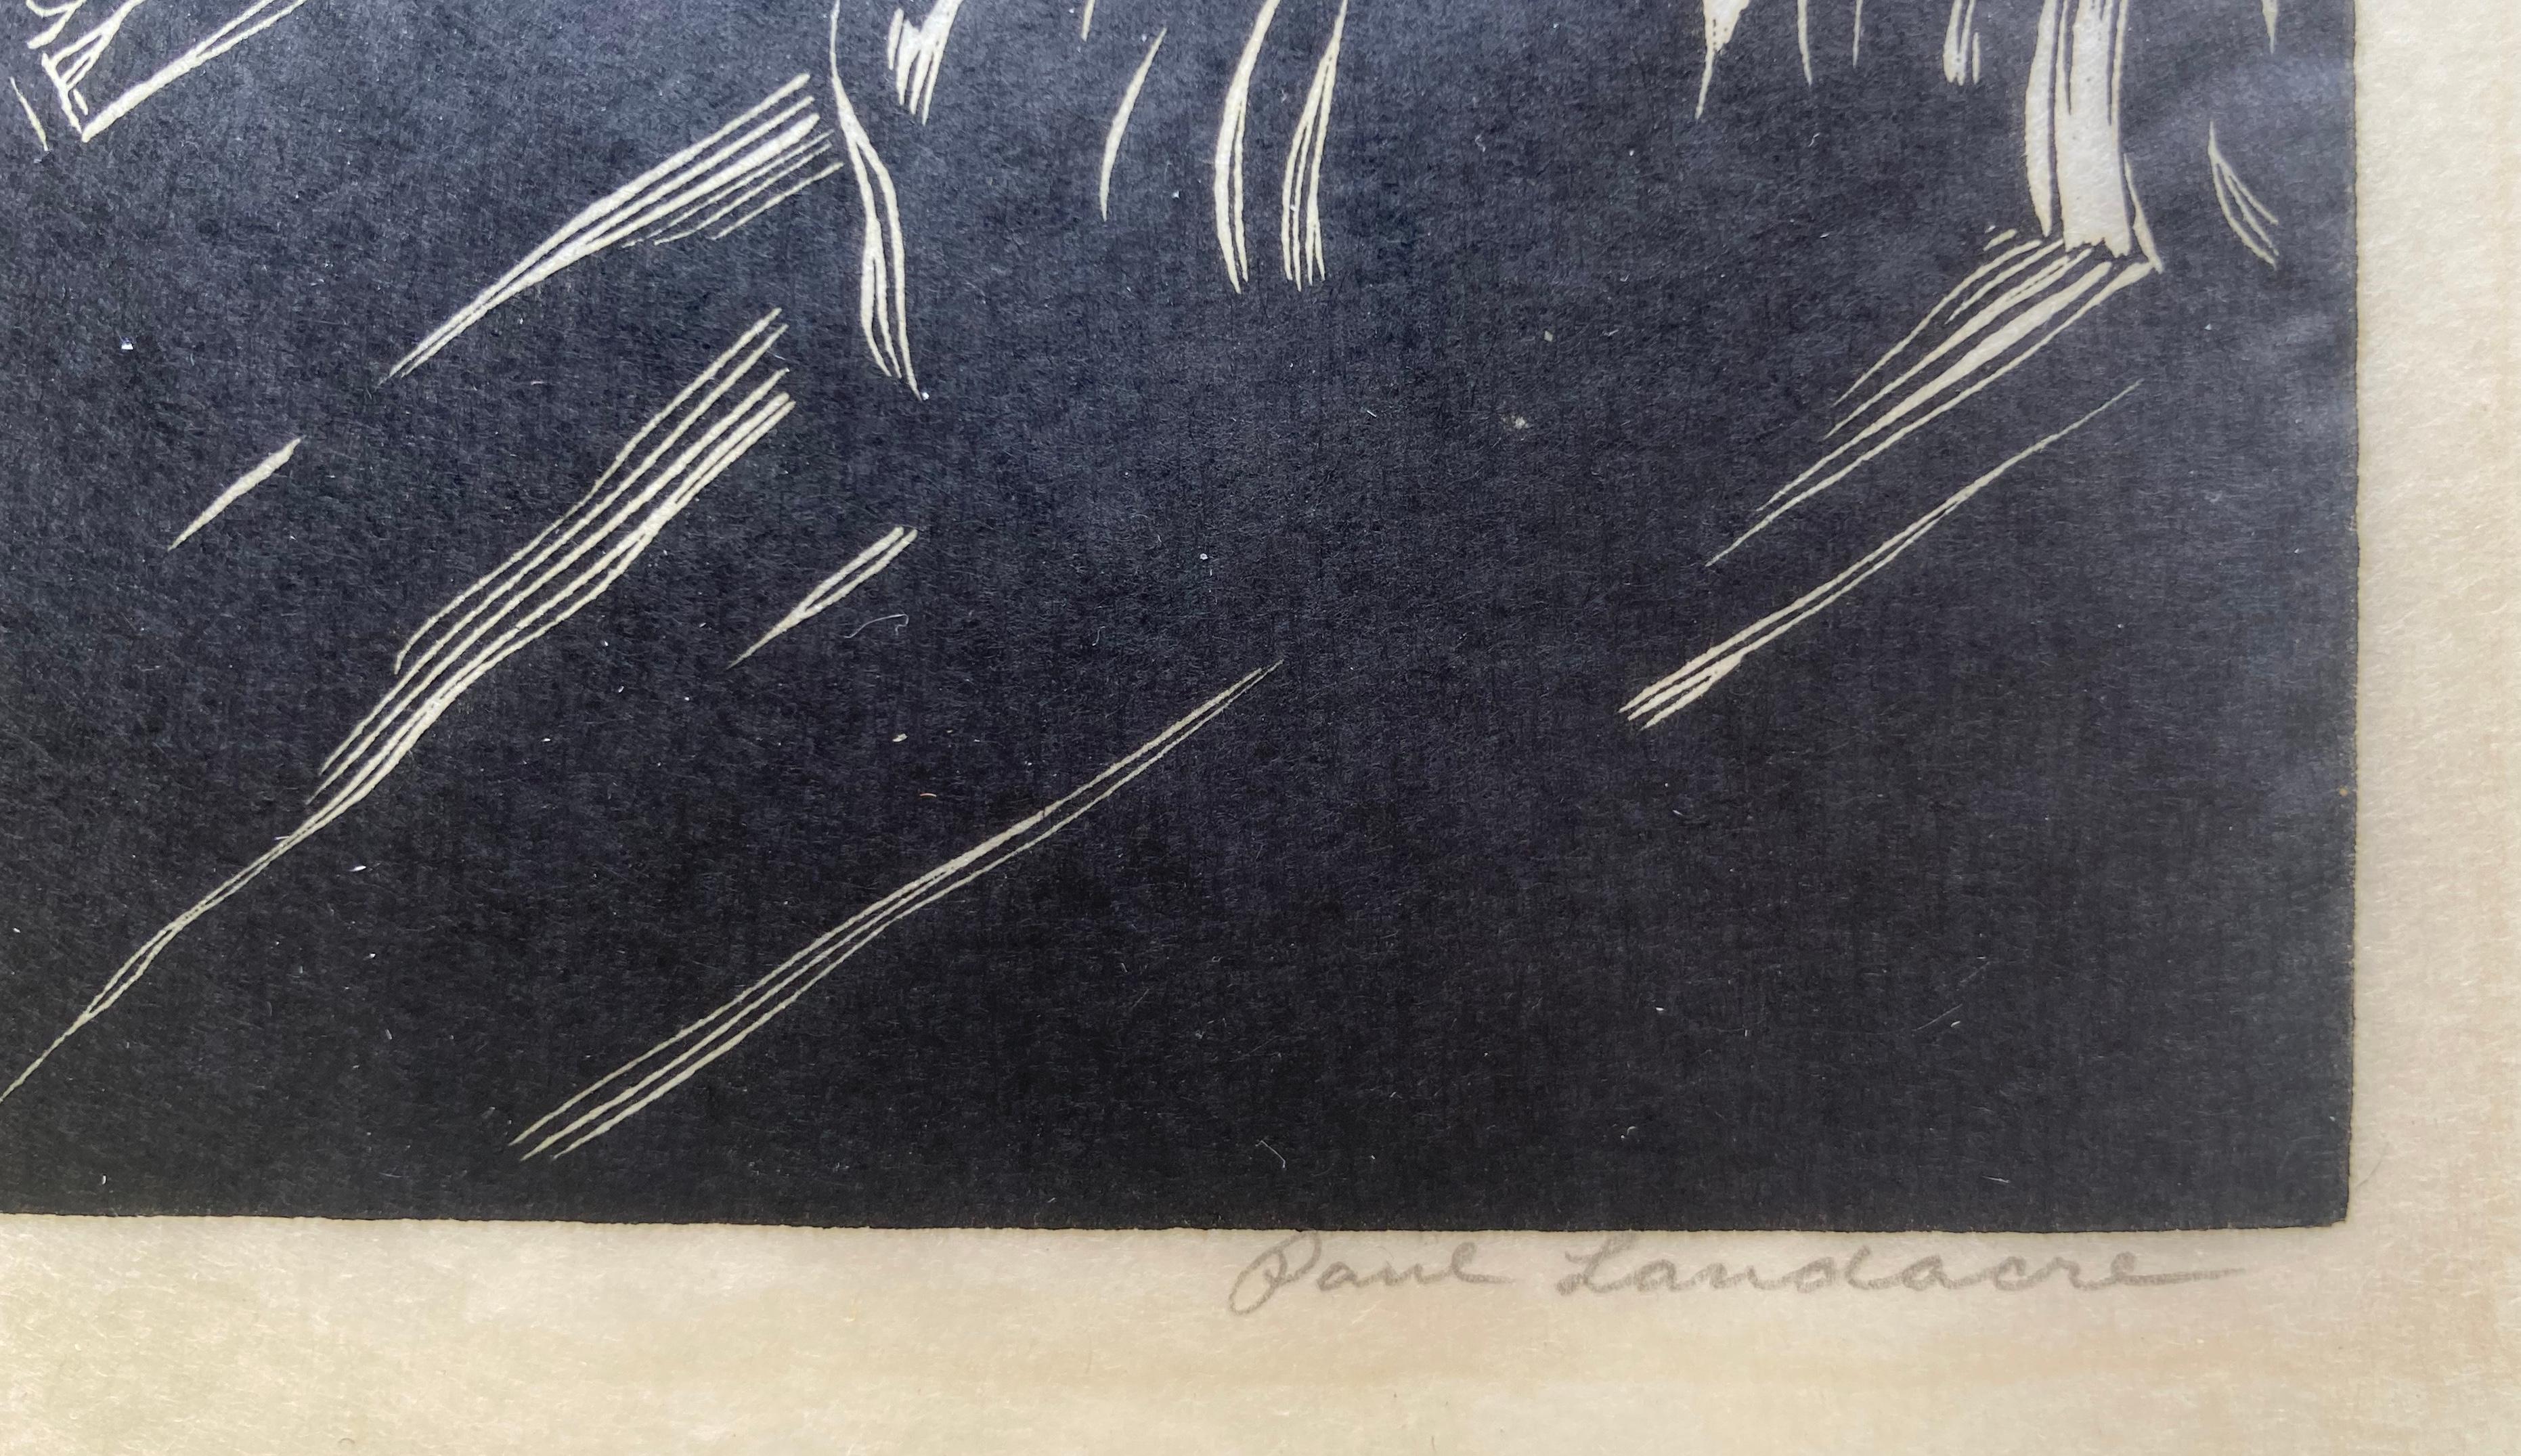 GRASBRAND. - Sehr seltener früh signierter Impression (Schwarz), Landscape Print, von Paul Landacre